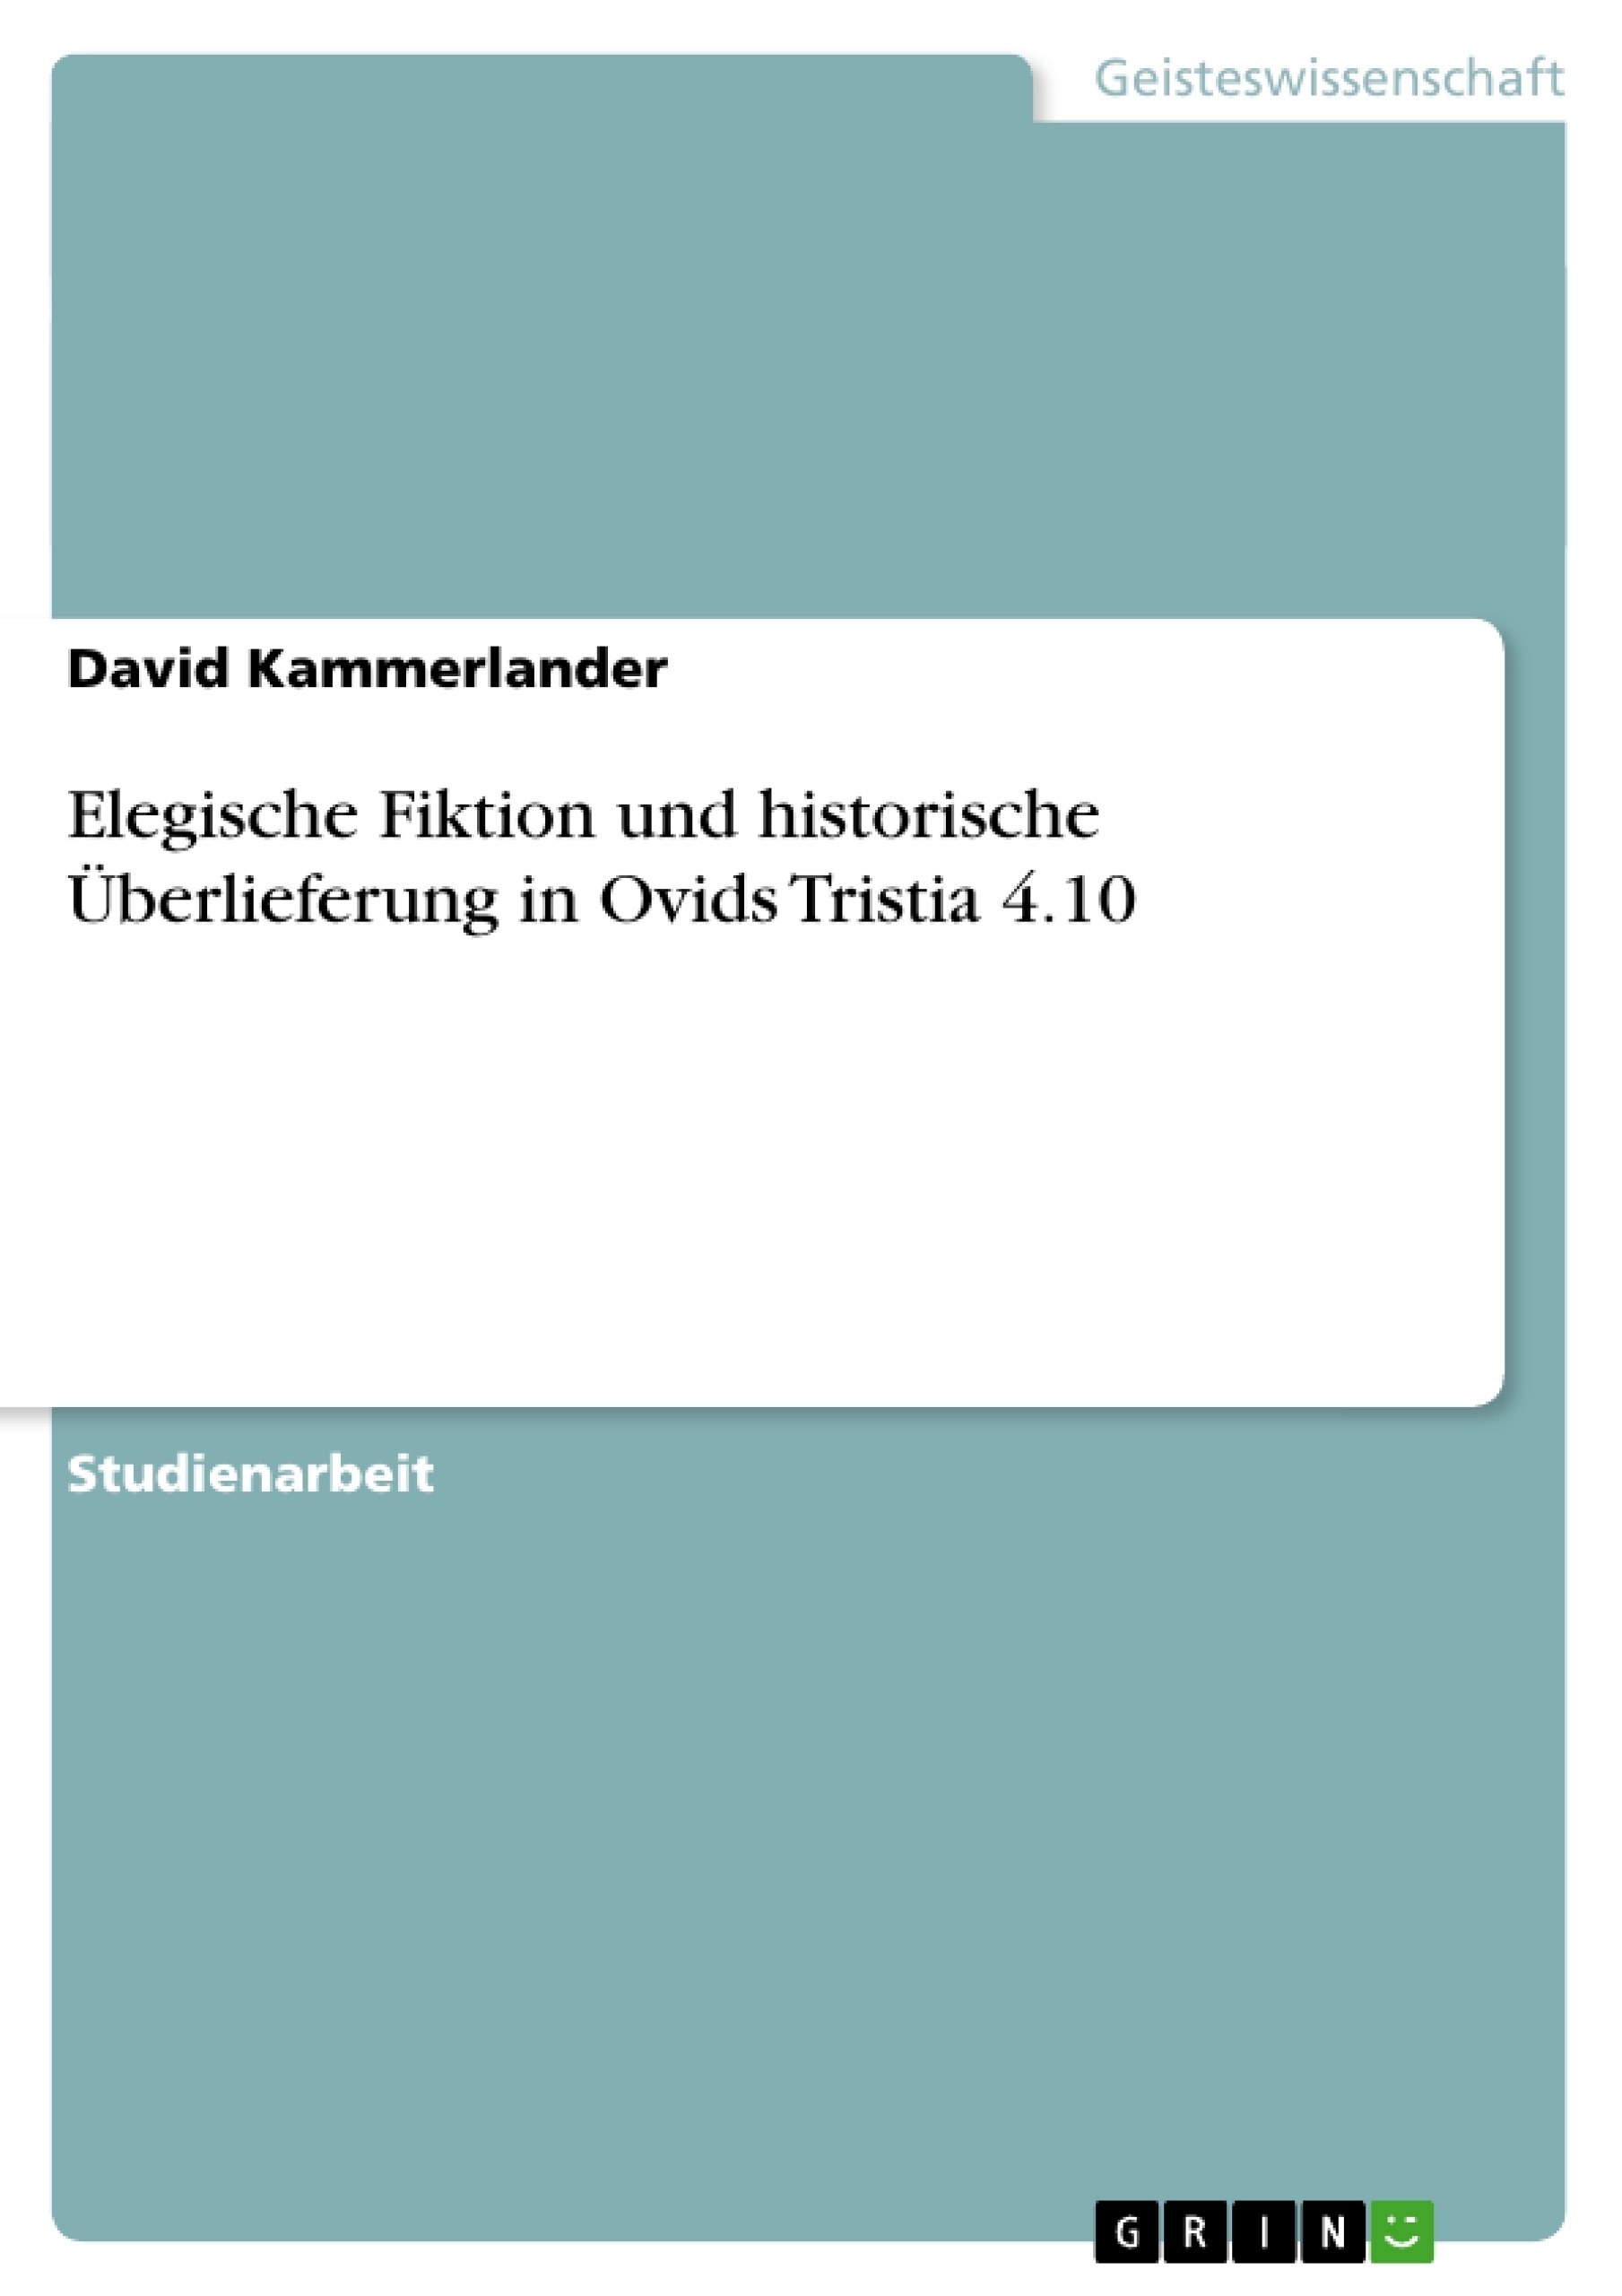 Titel: Elegische Fiktion und historische Überlieferung in Ovids Tristia 4.10